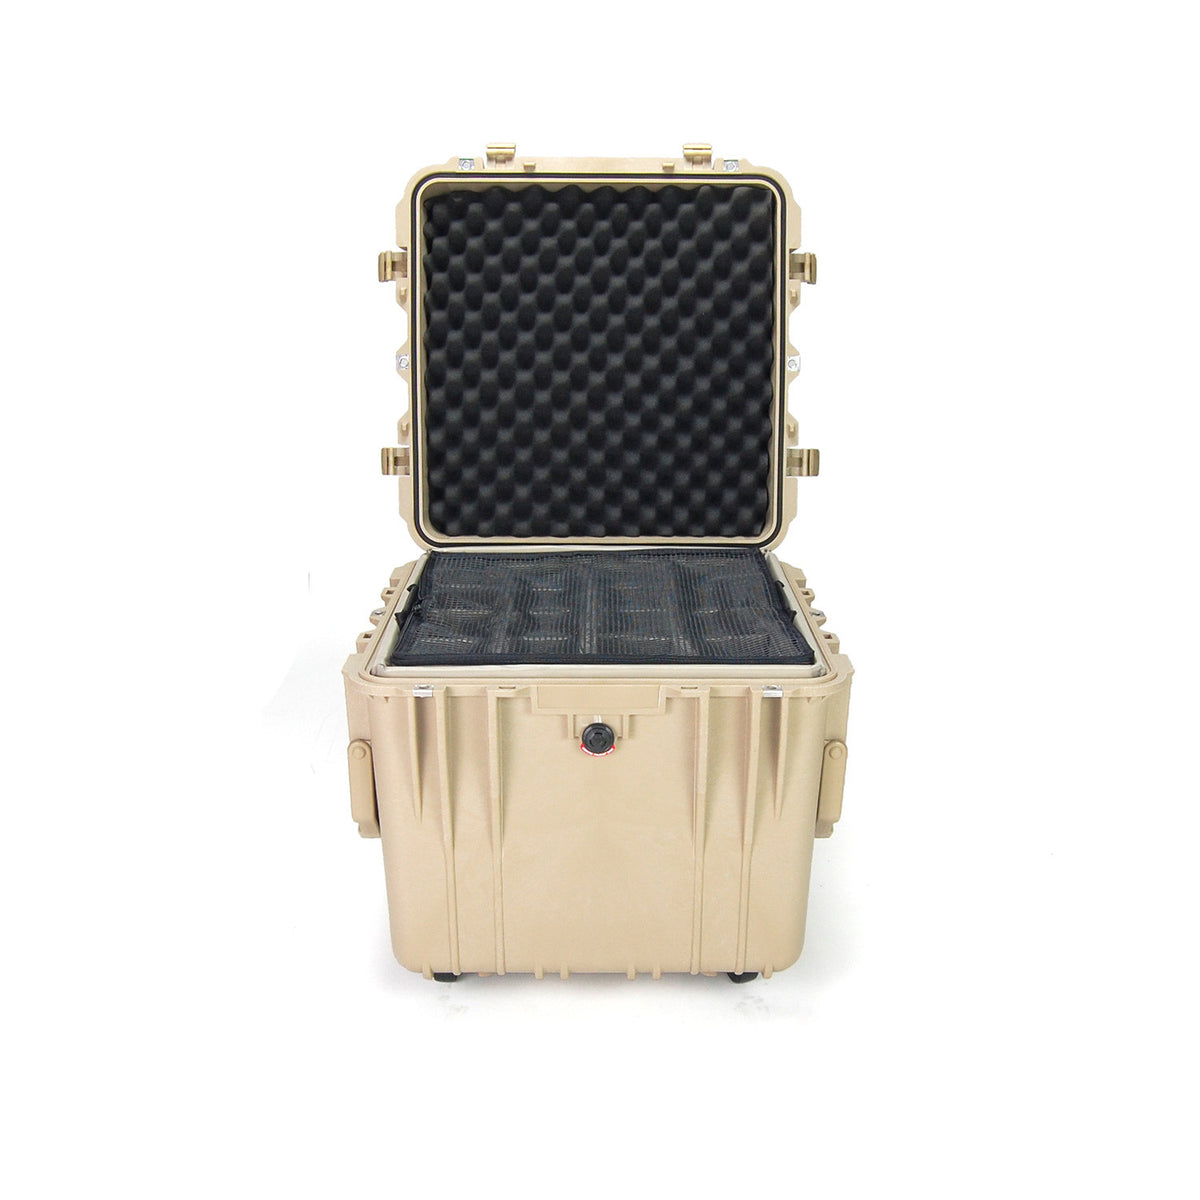 Pelican™ 0340 Protector Cube Case